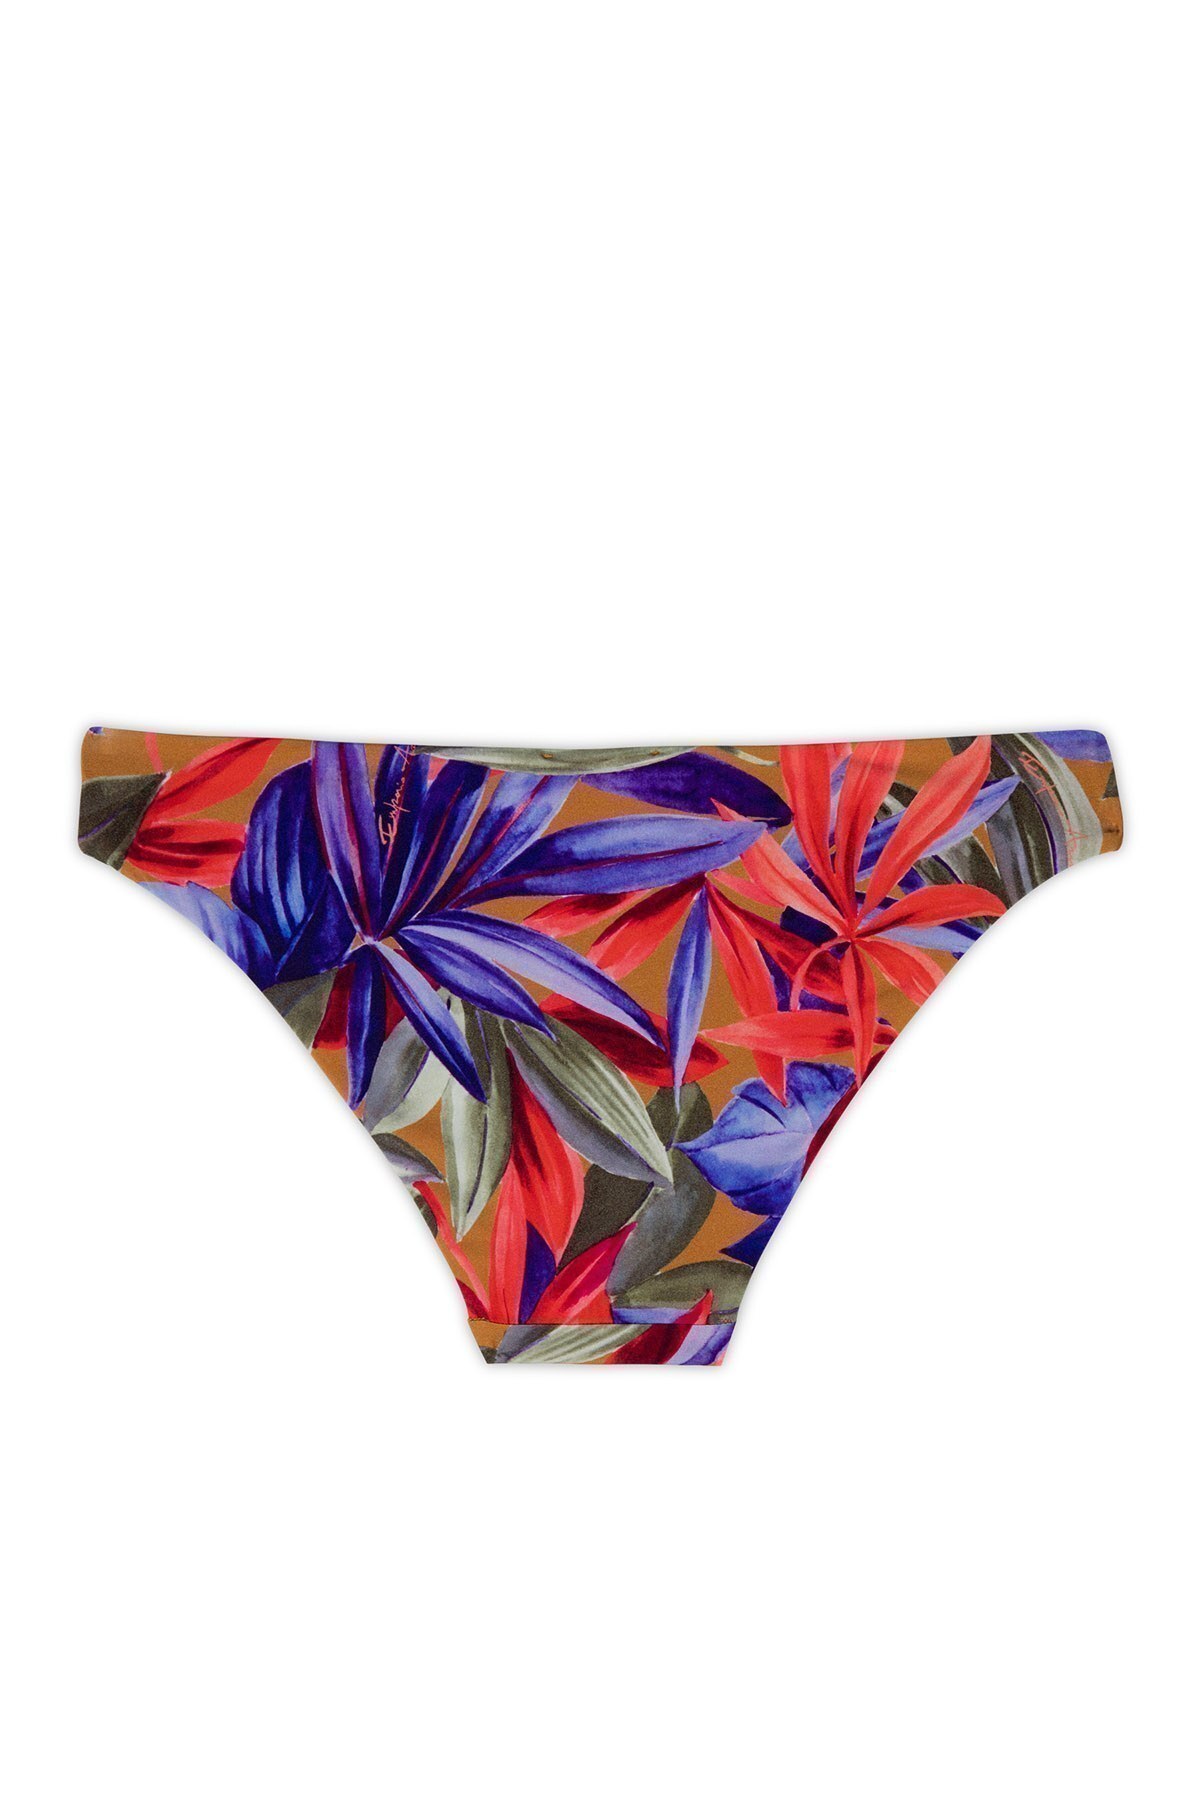 Emporio Armani Tropikal Desenli Bağlama Detaylı Kadın Bikini 262456 0P300 09372 MOR